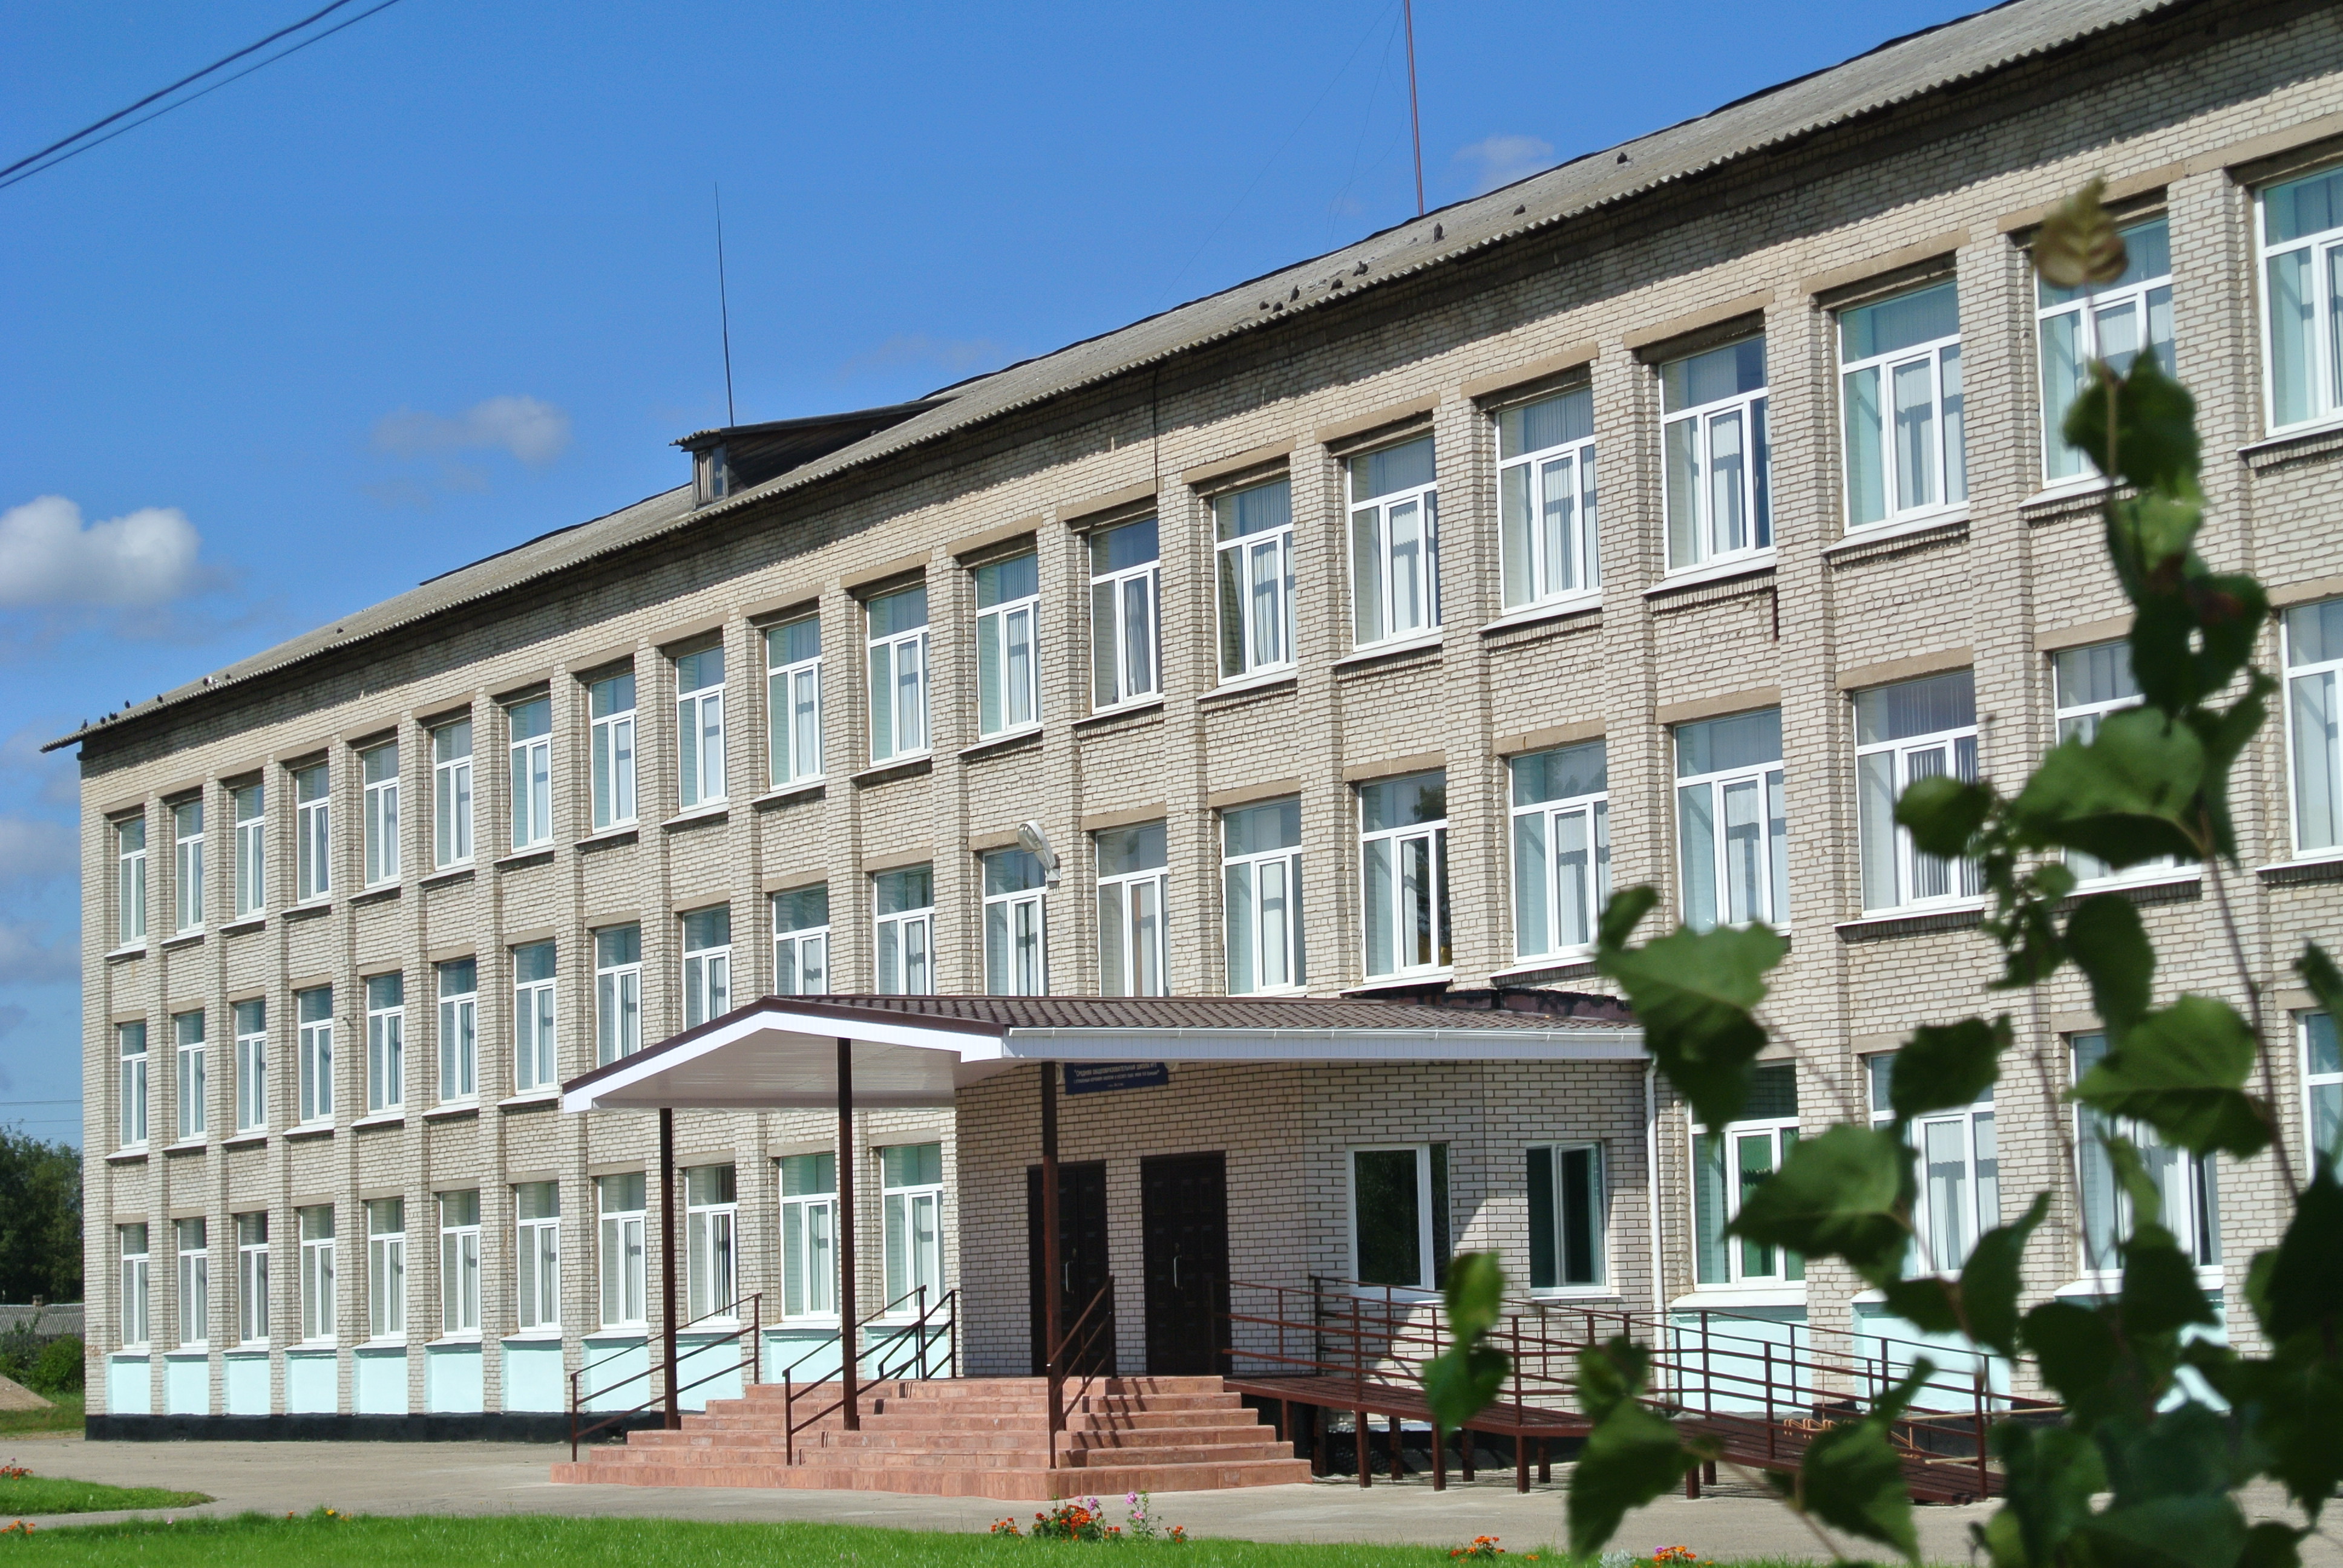 Сайт школы новгородская область